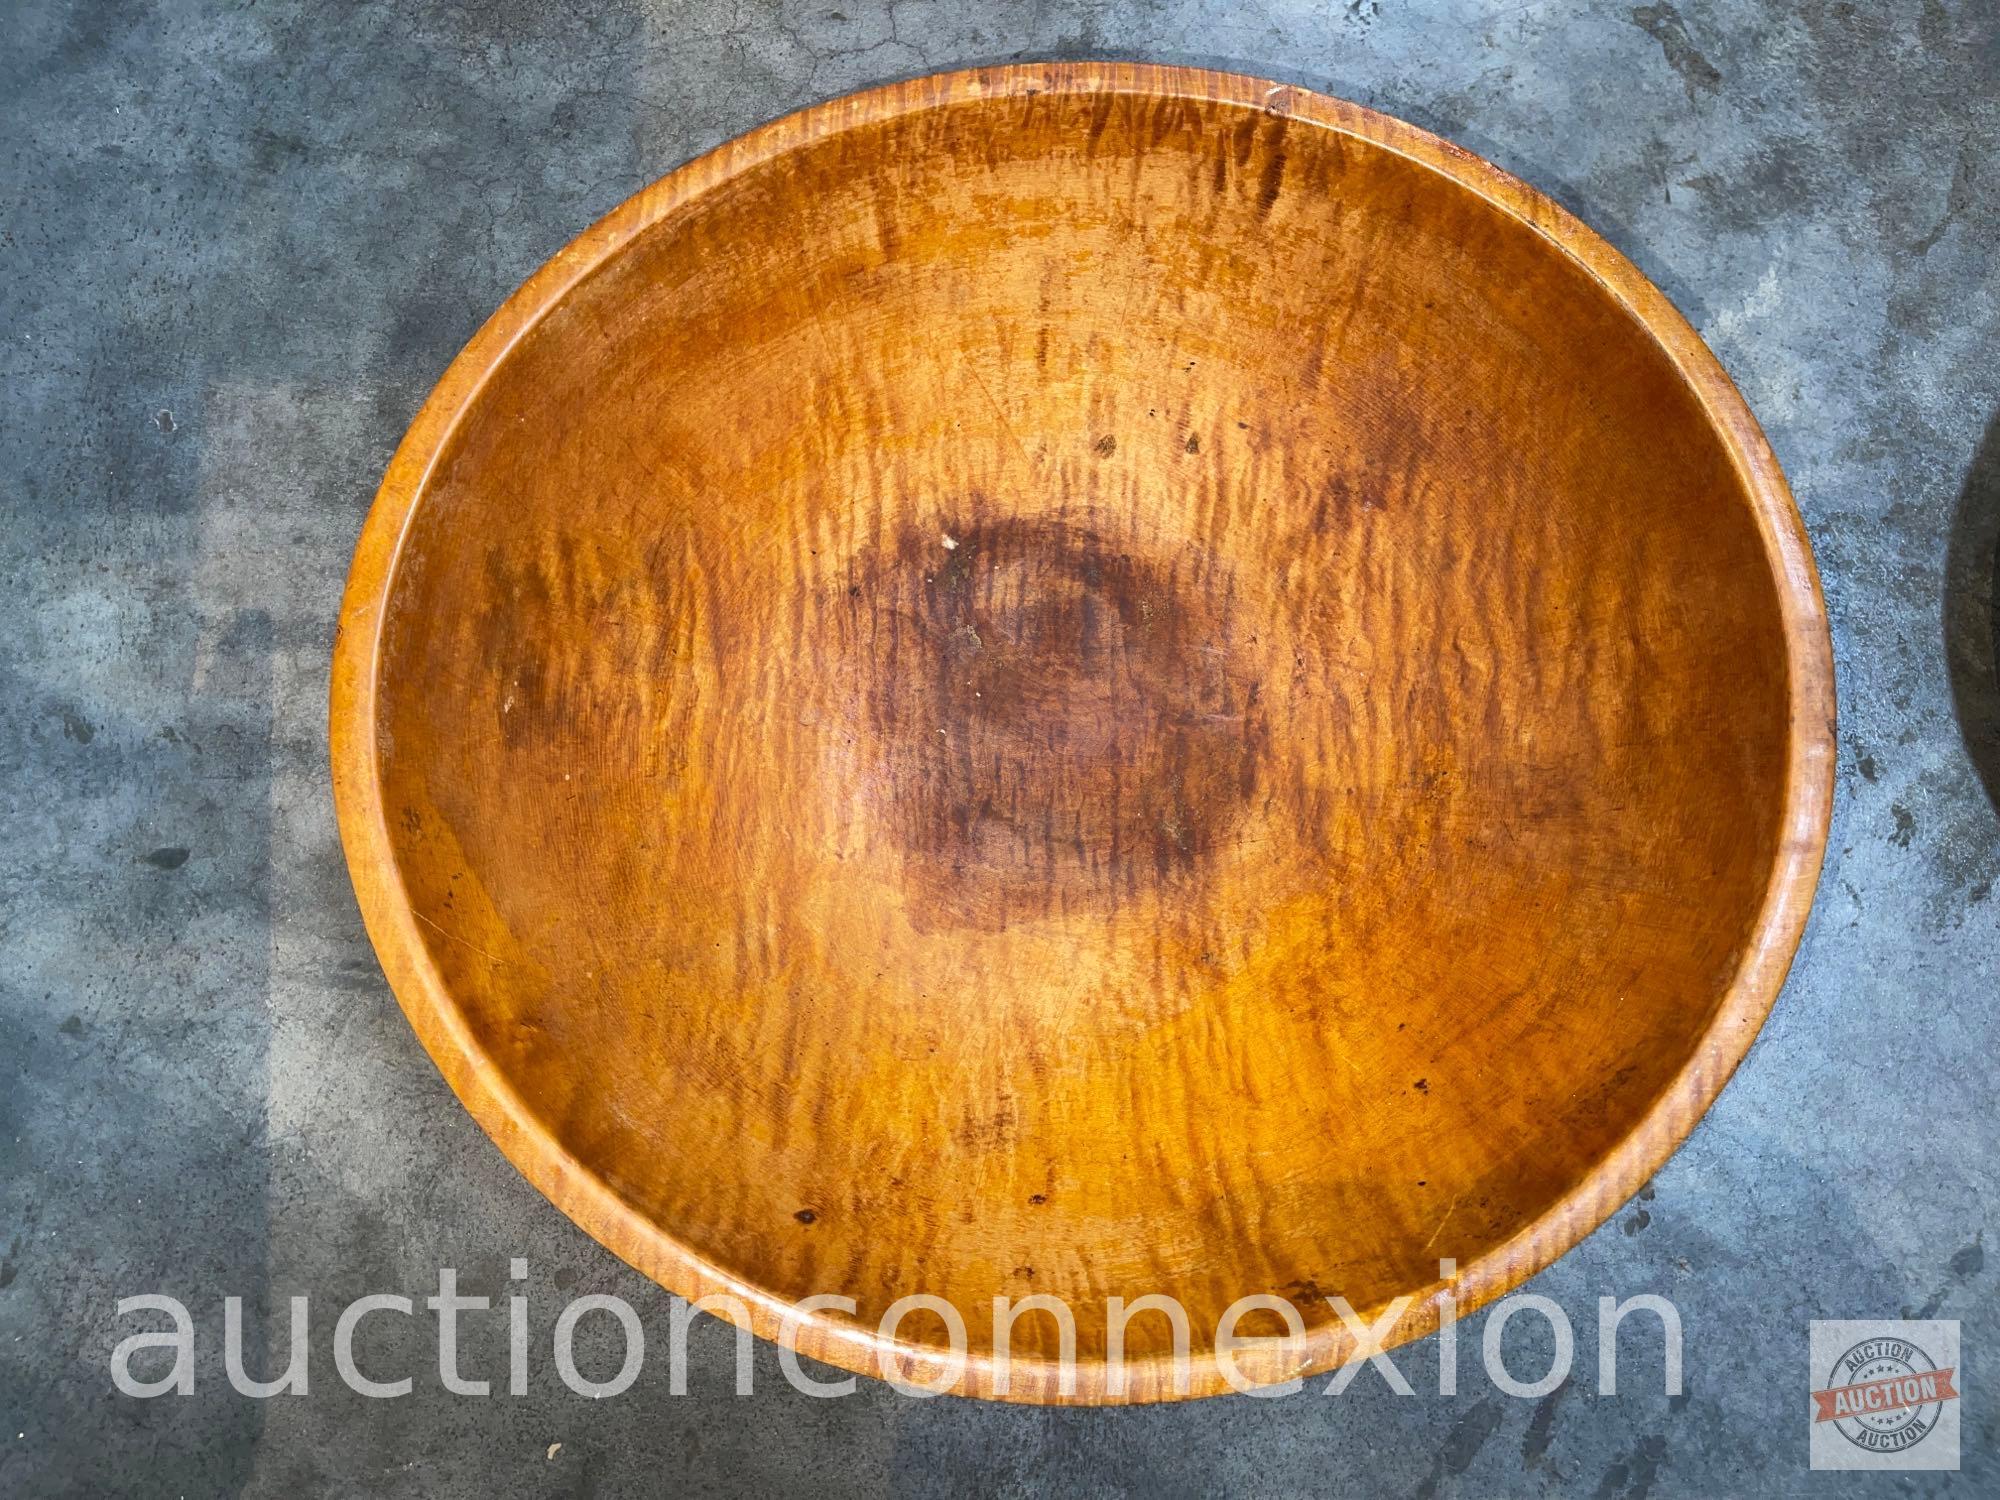 Vintage Kitchenware - Large wooden bowl, baking pans and Moulin juicer